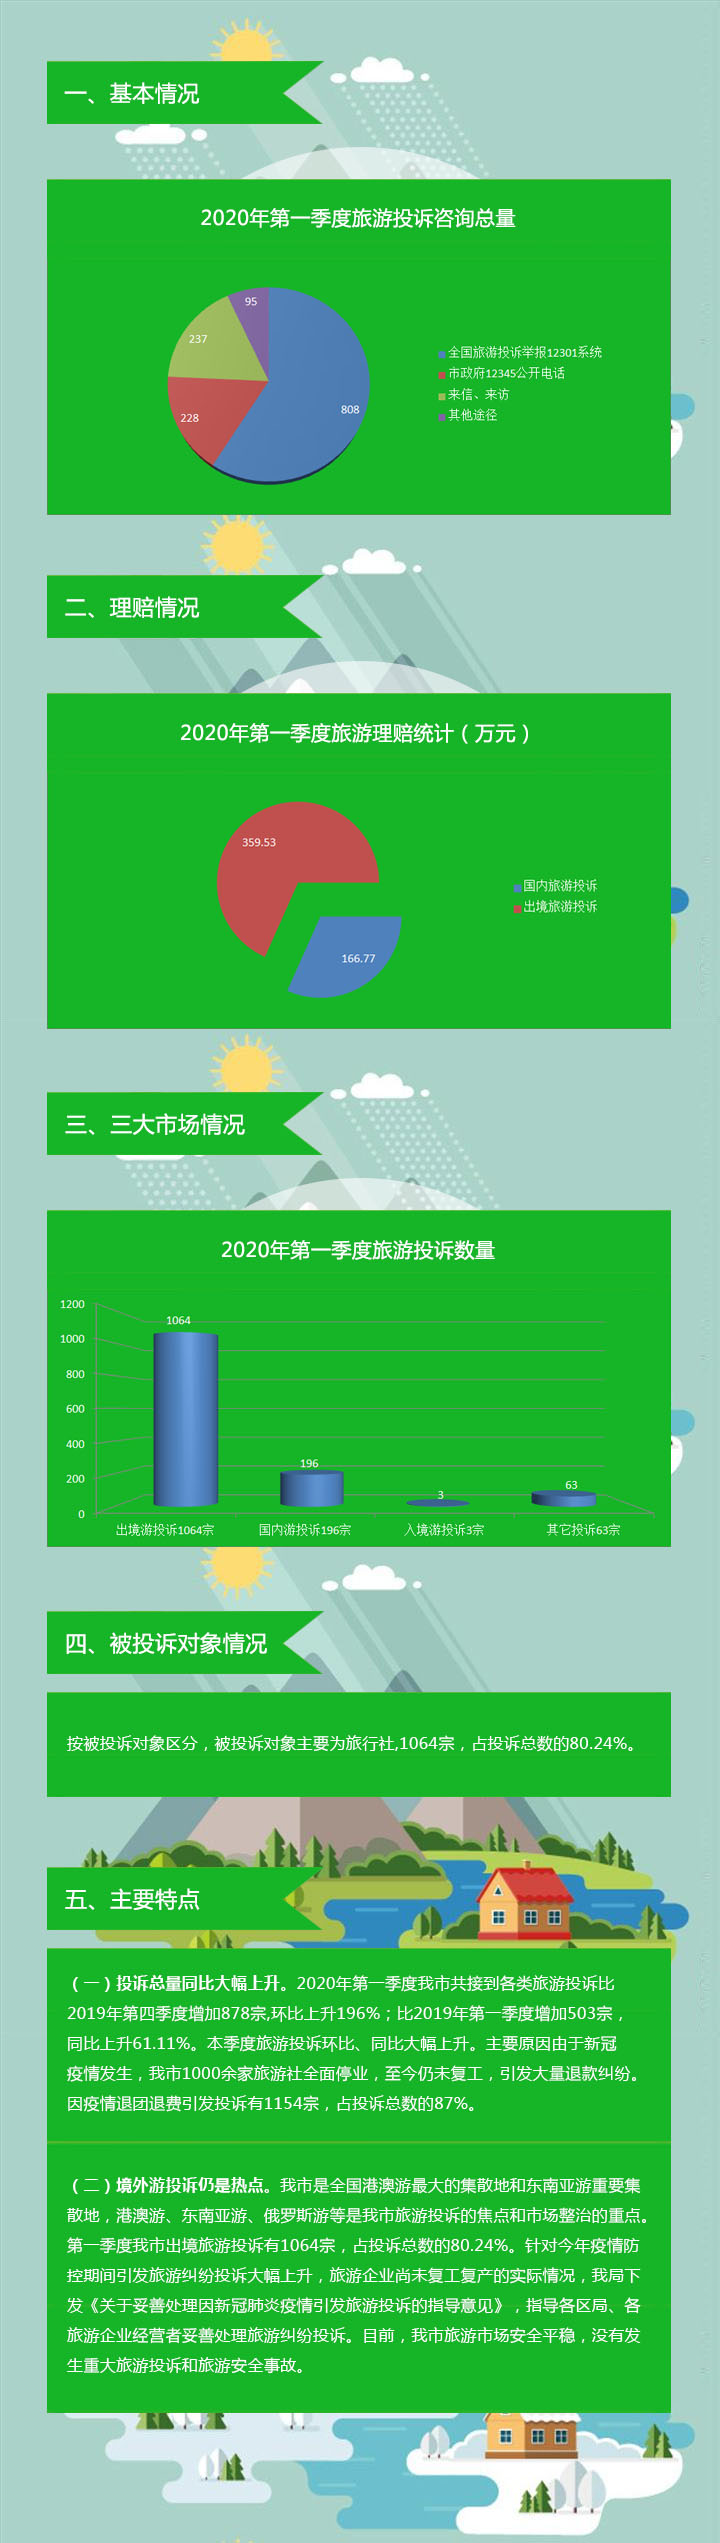 【图解】深圳市旅游监管简报（2020年第一季度）